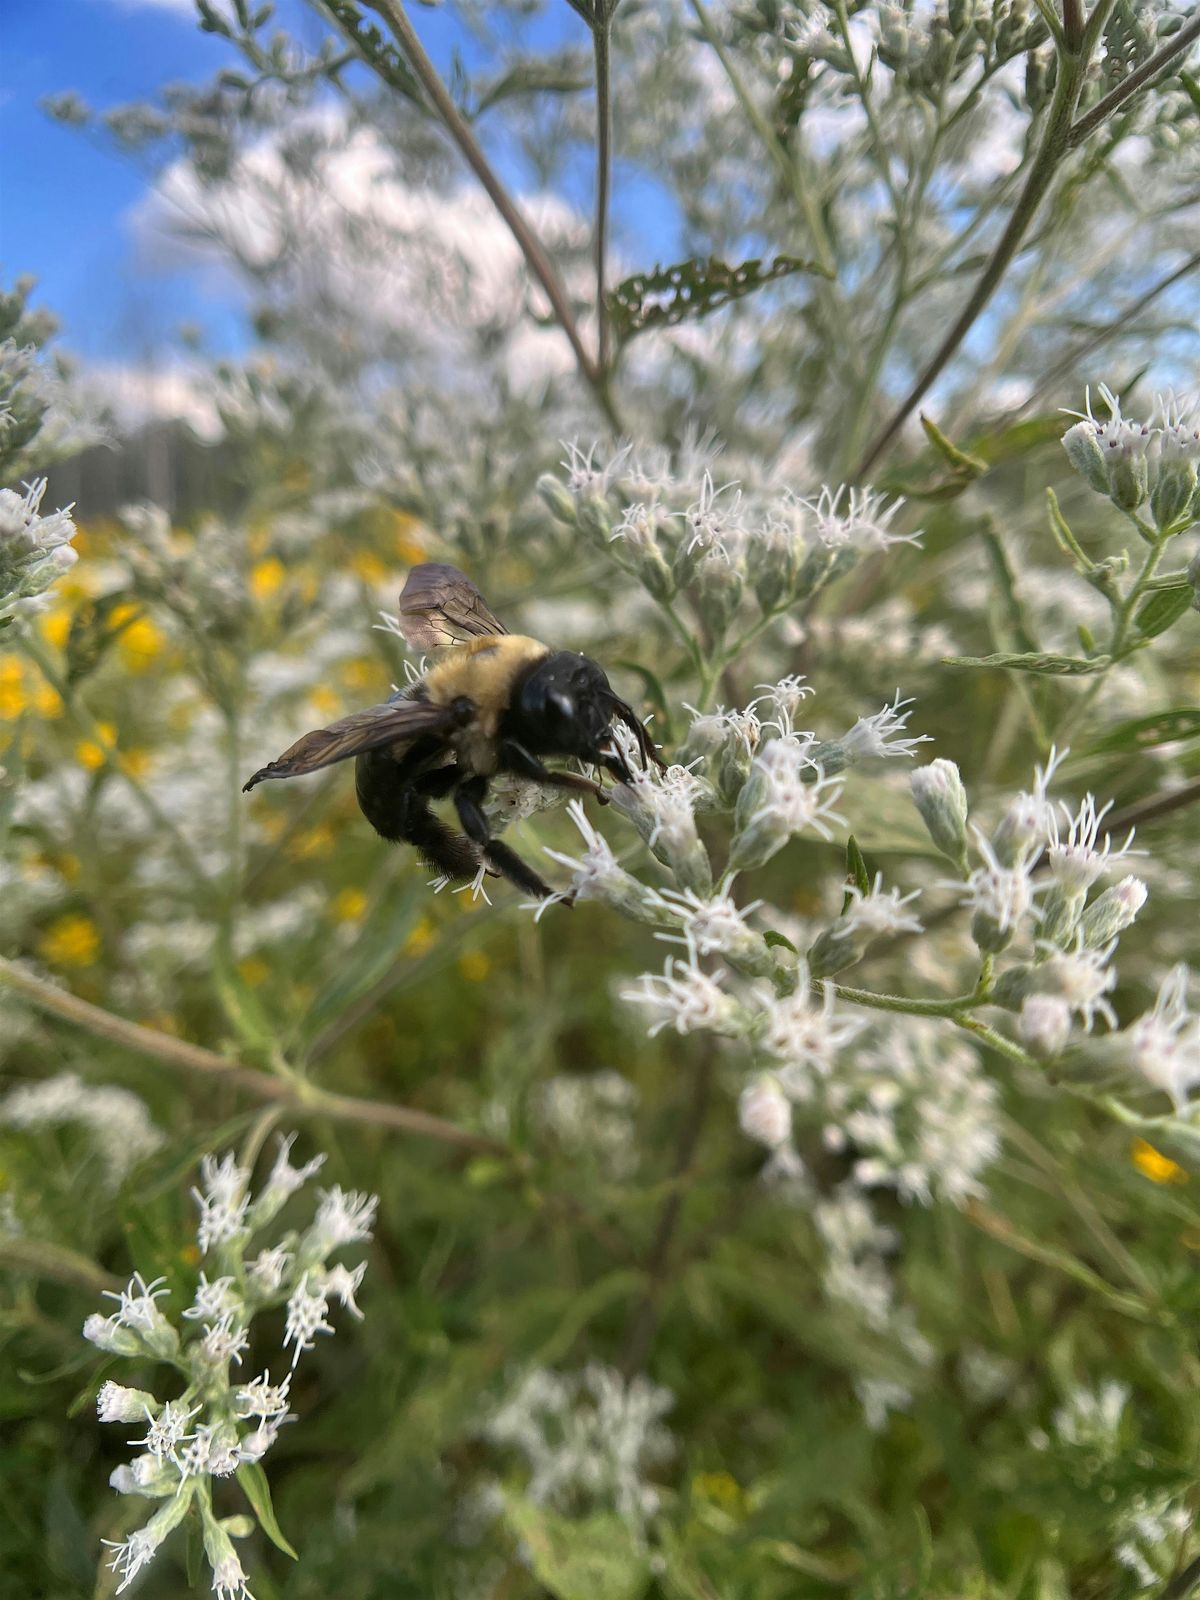 Jr. Naturalist: The Buzz About Pollinators